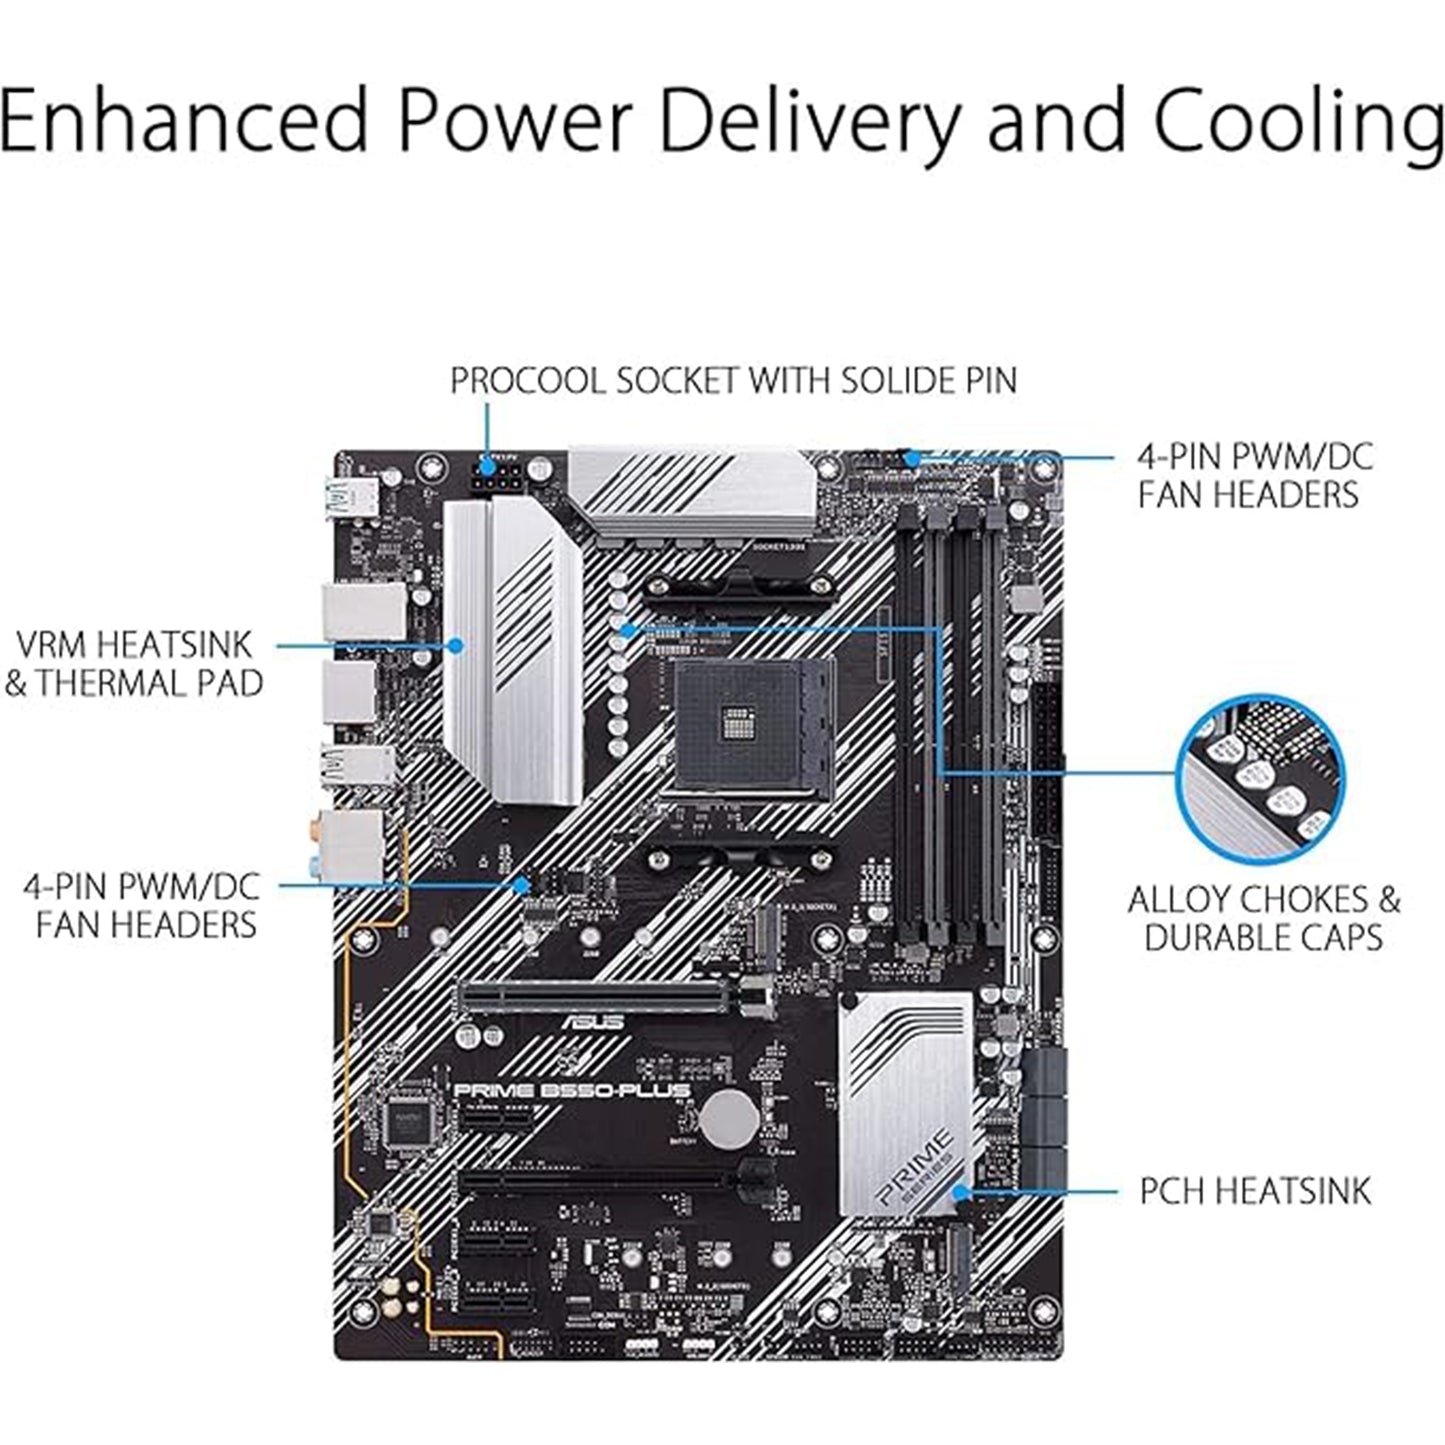 معالج INLAND Micro Center AMD Ryzen 7 5800X 8-Core 16-Thread AM4 غير مقفل مع ASUS TUF Gaming X570-PLUS (WI-FI) PCIe 4.0 Dual M.2 USB 3.2 Gen 2 ATX Gaming اللوحة الأم 